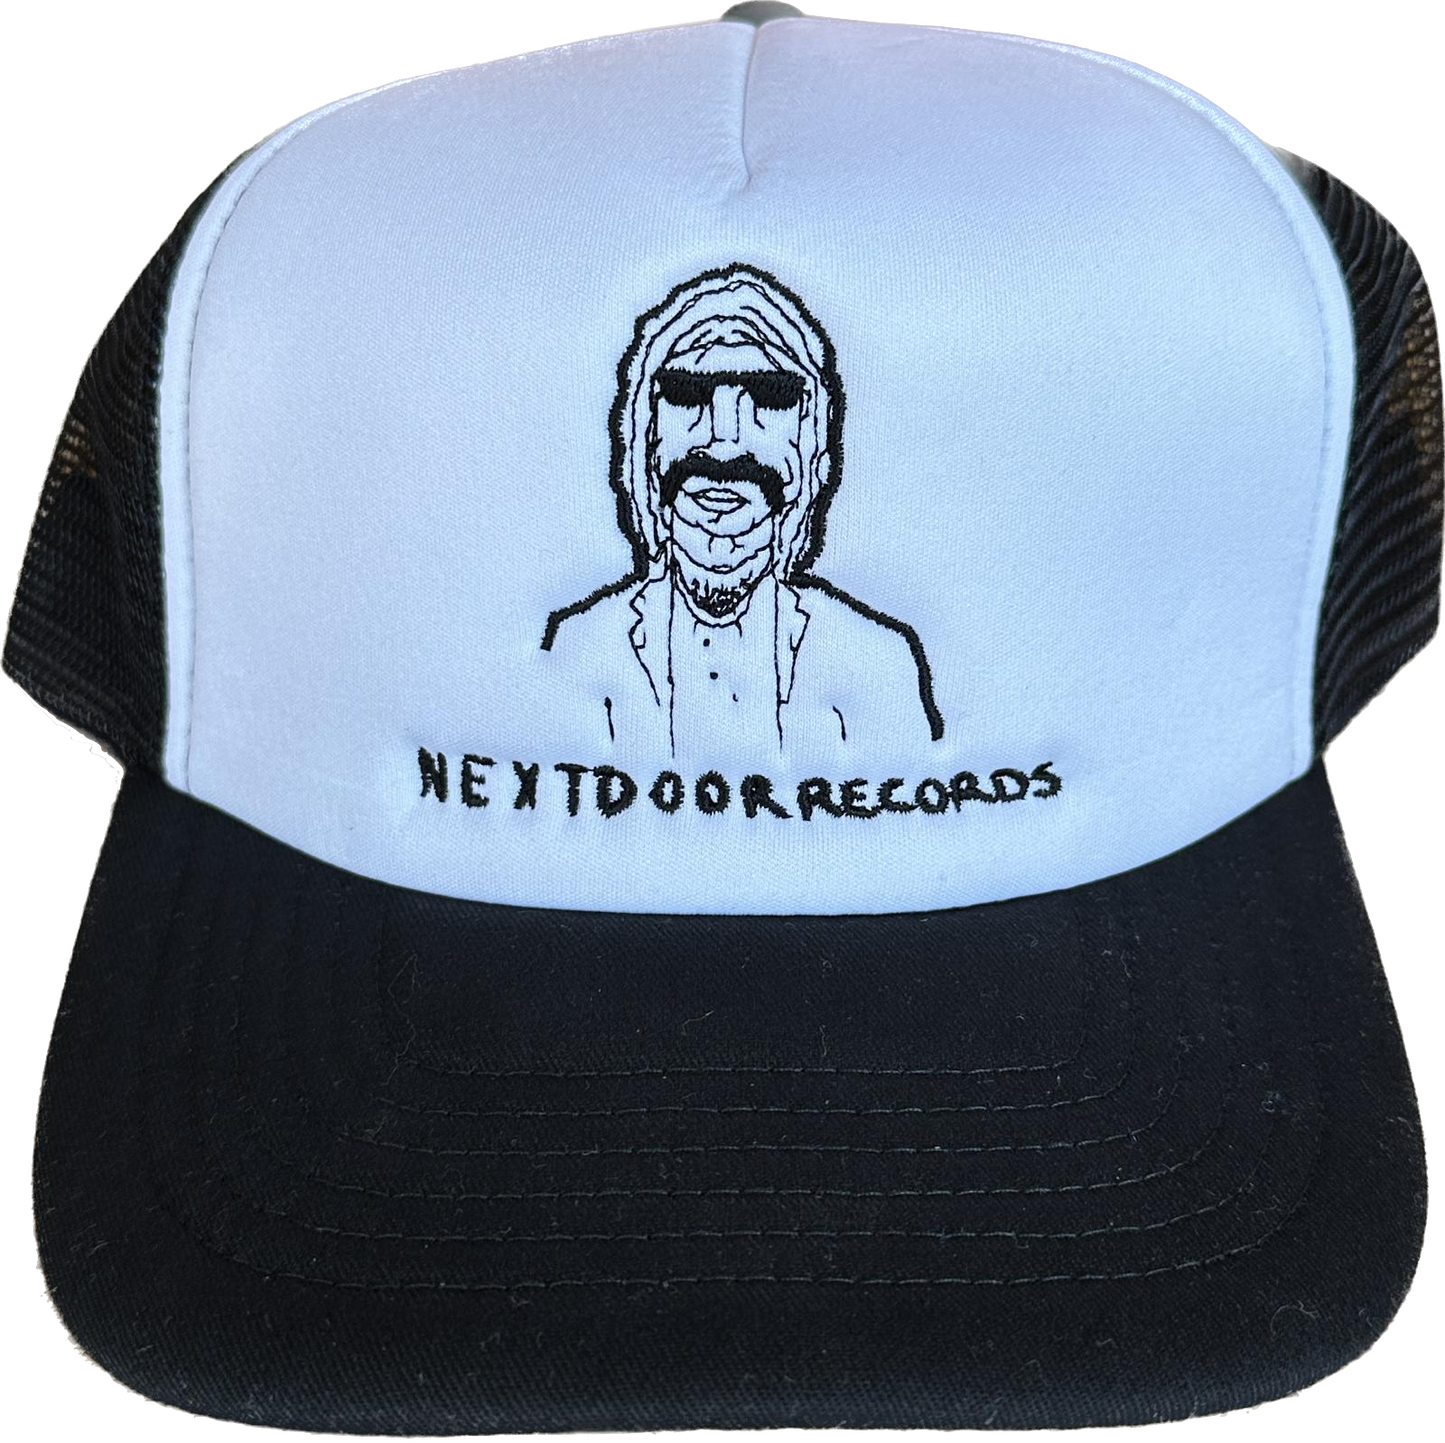 Next Door Records Trucker Cap